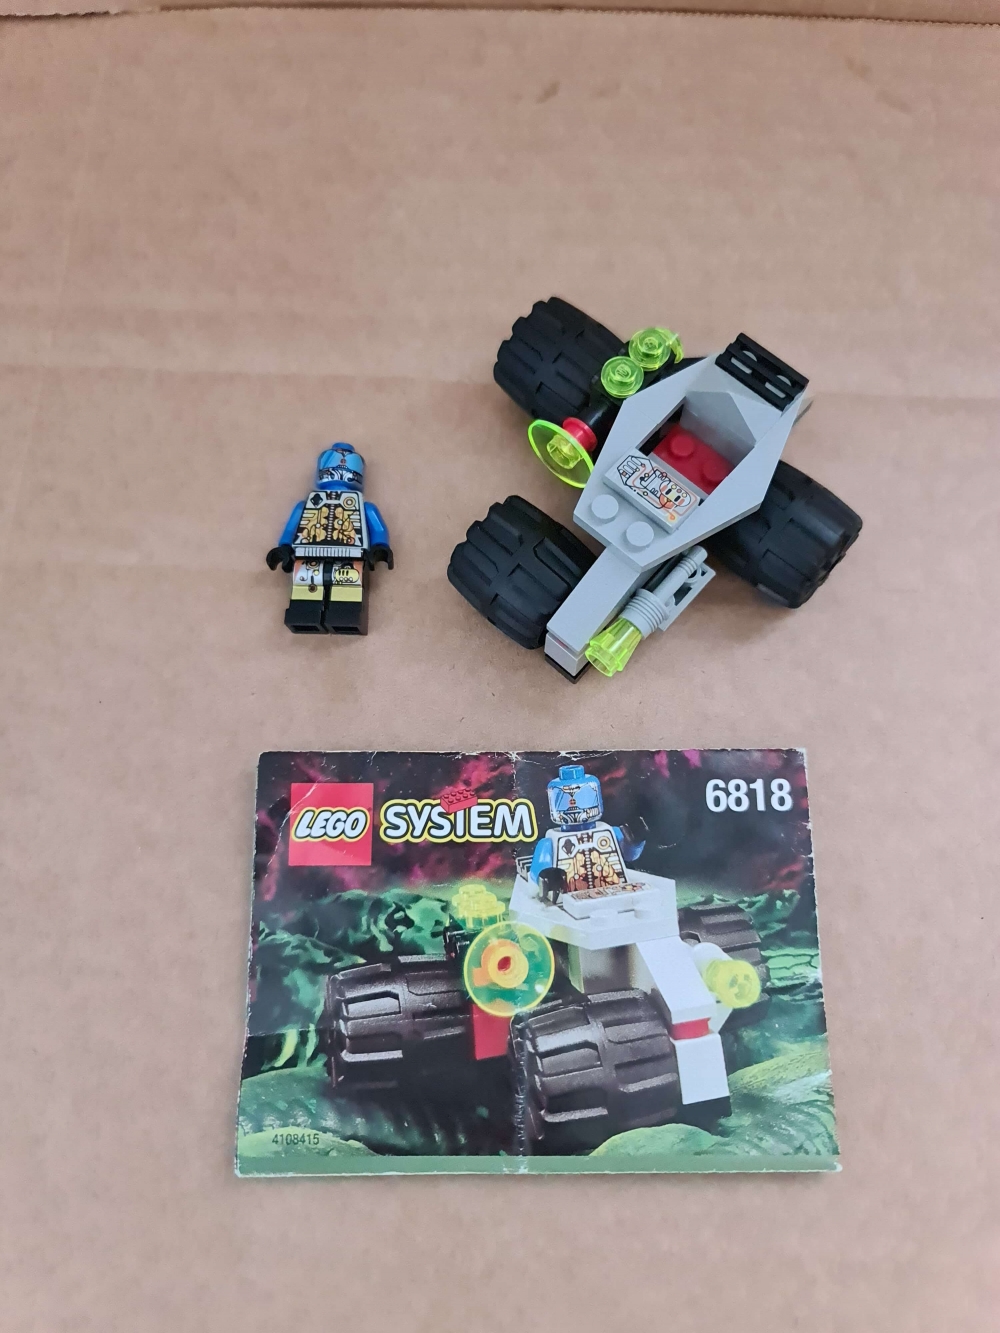 Sett 6818 fra Lego Space : UFO serien.
Meget pent.
Komplett med manual.